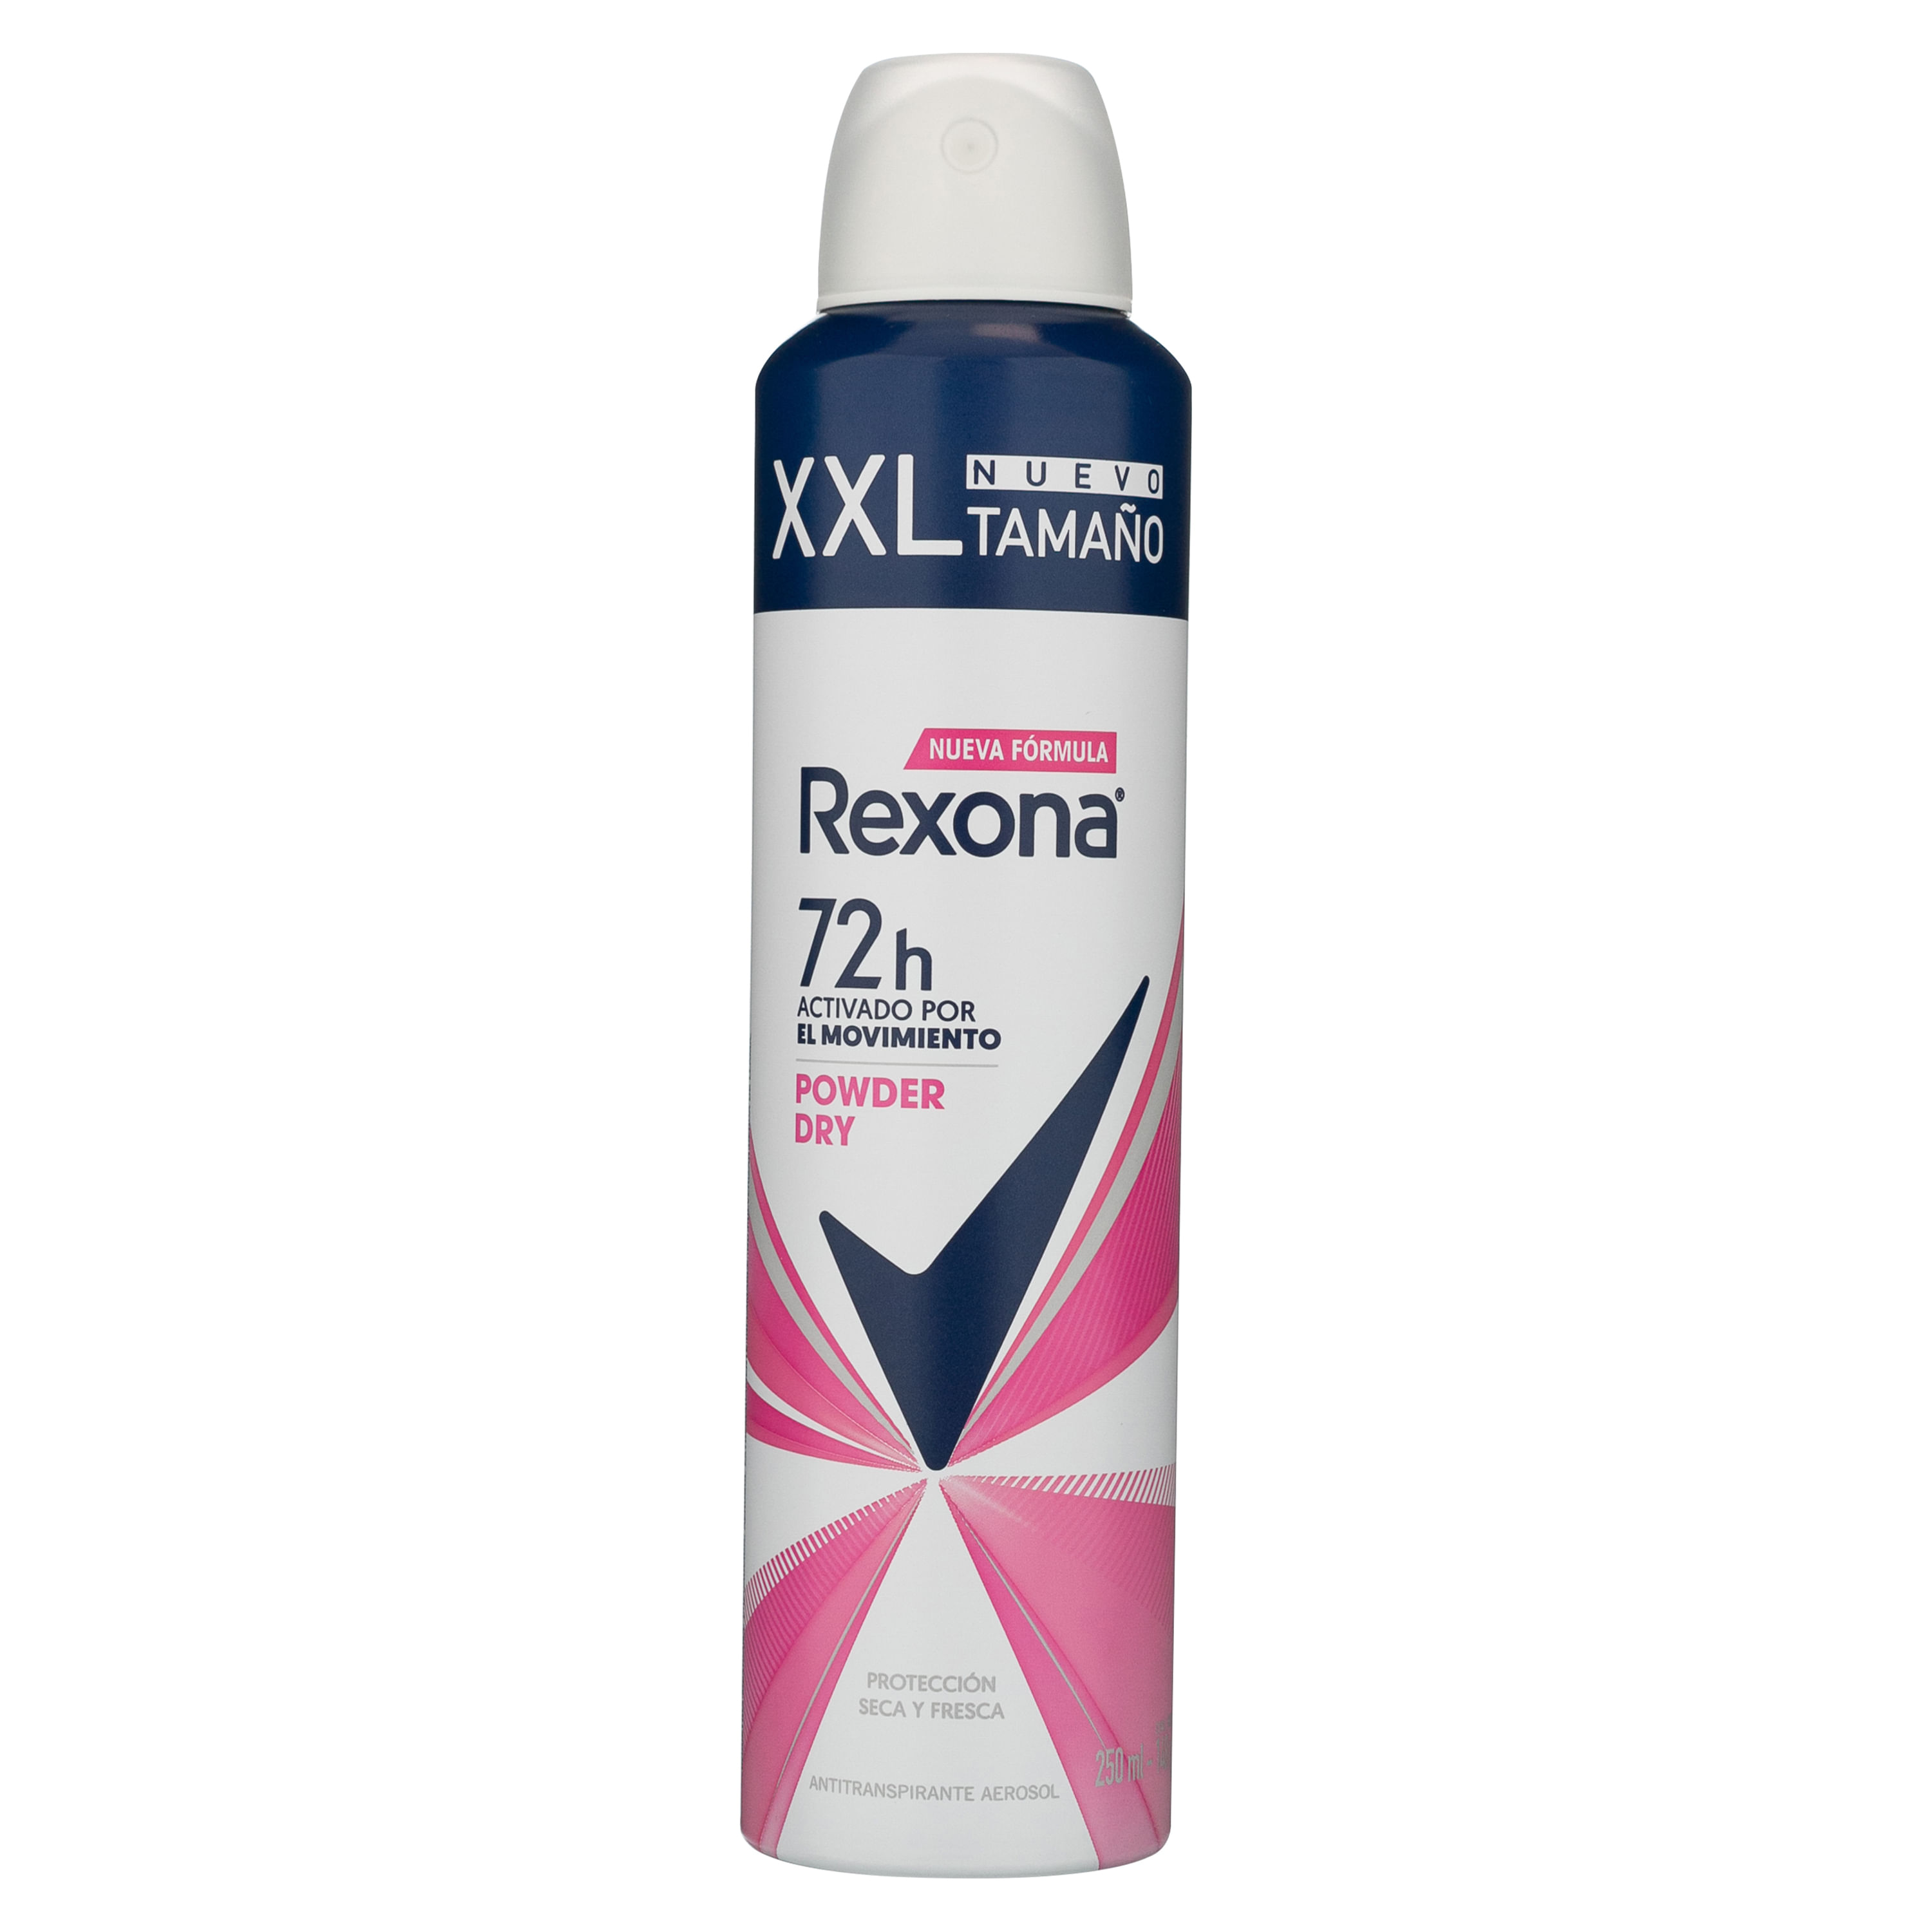 Desodorante Aerosol Rexona Powder 150ml - Supermercado Coop